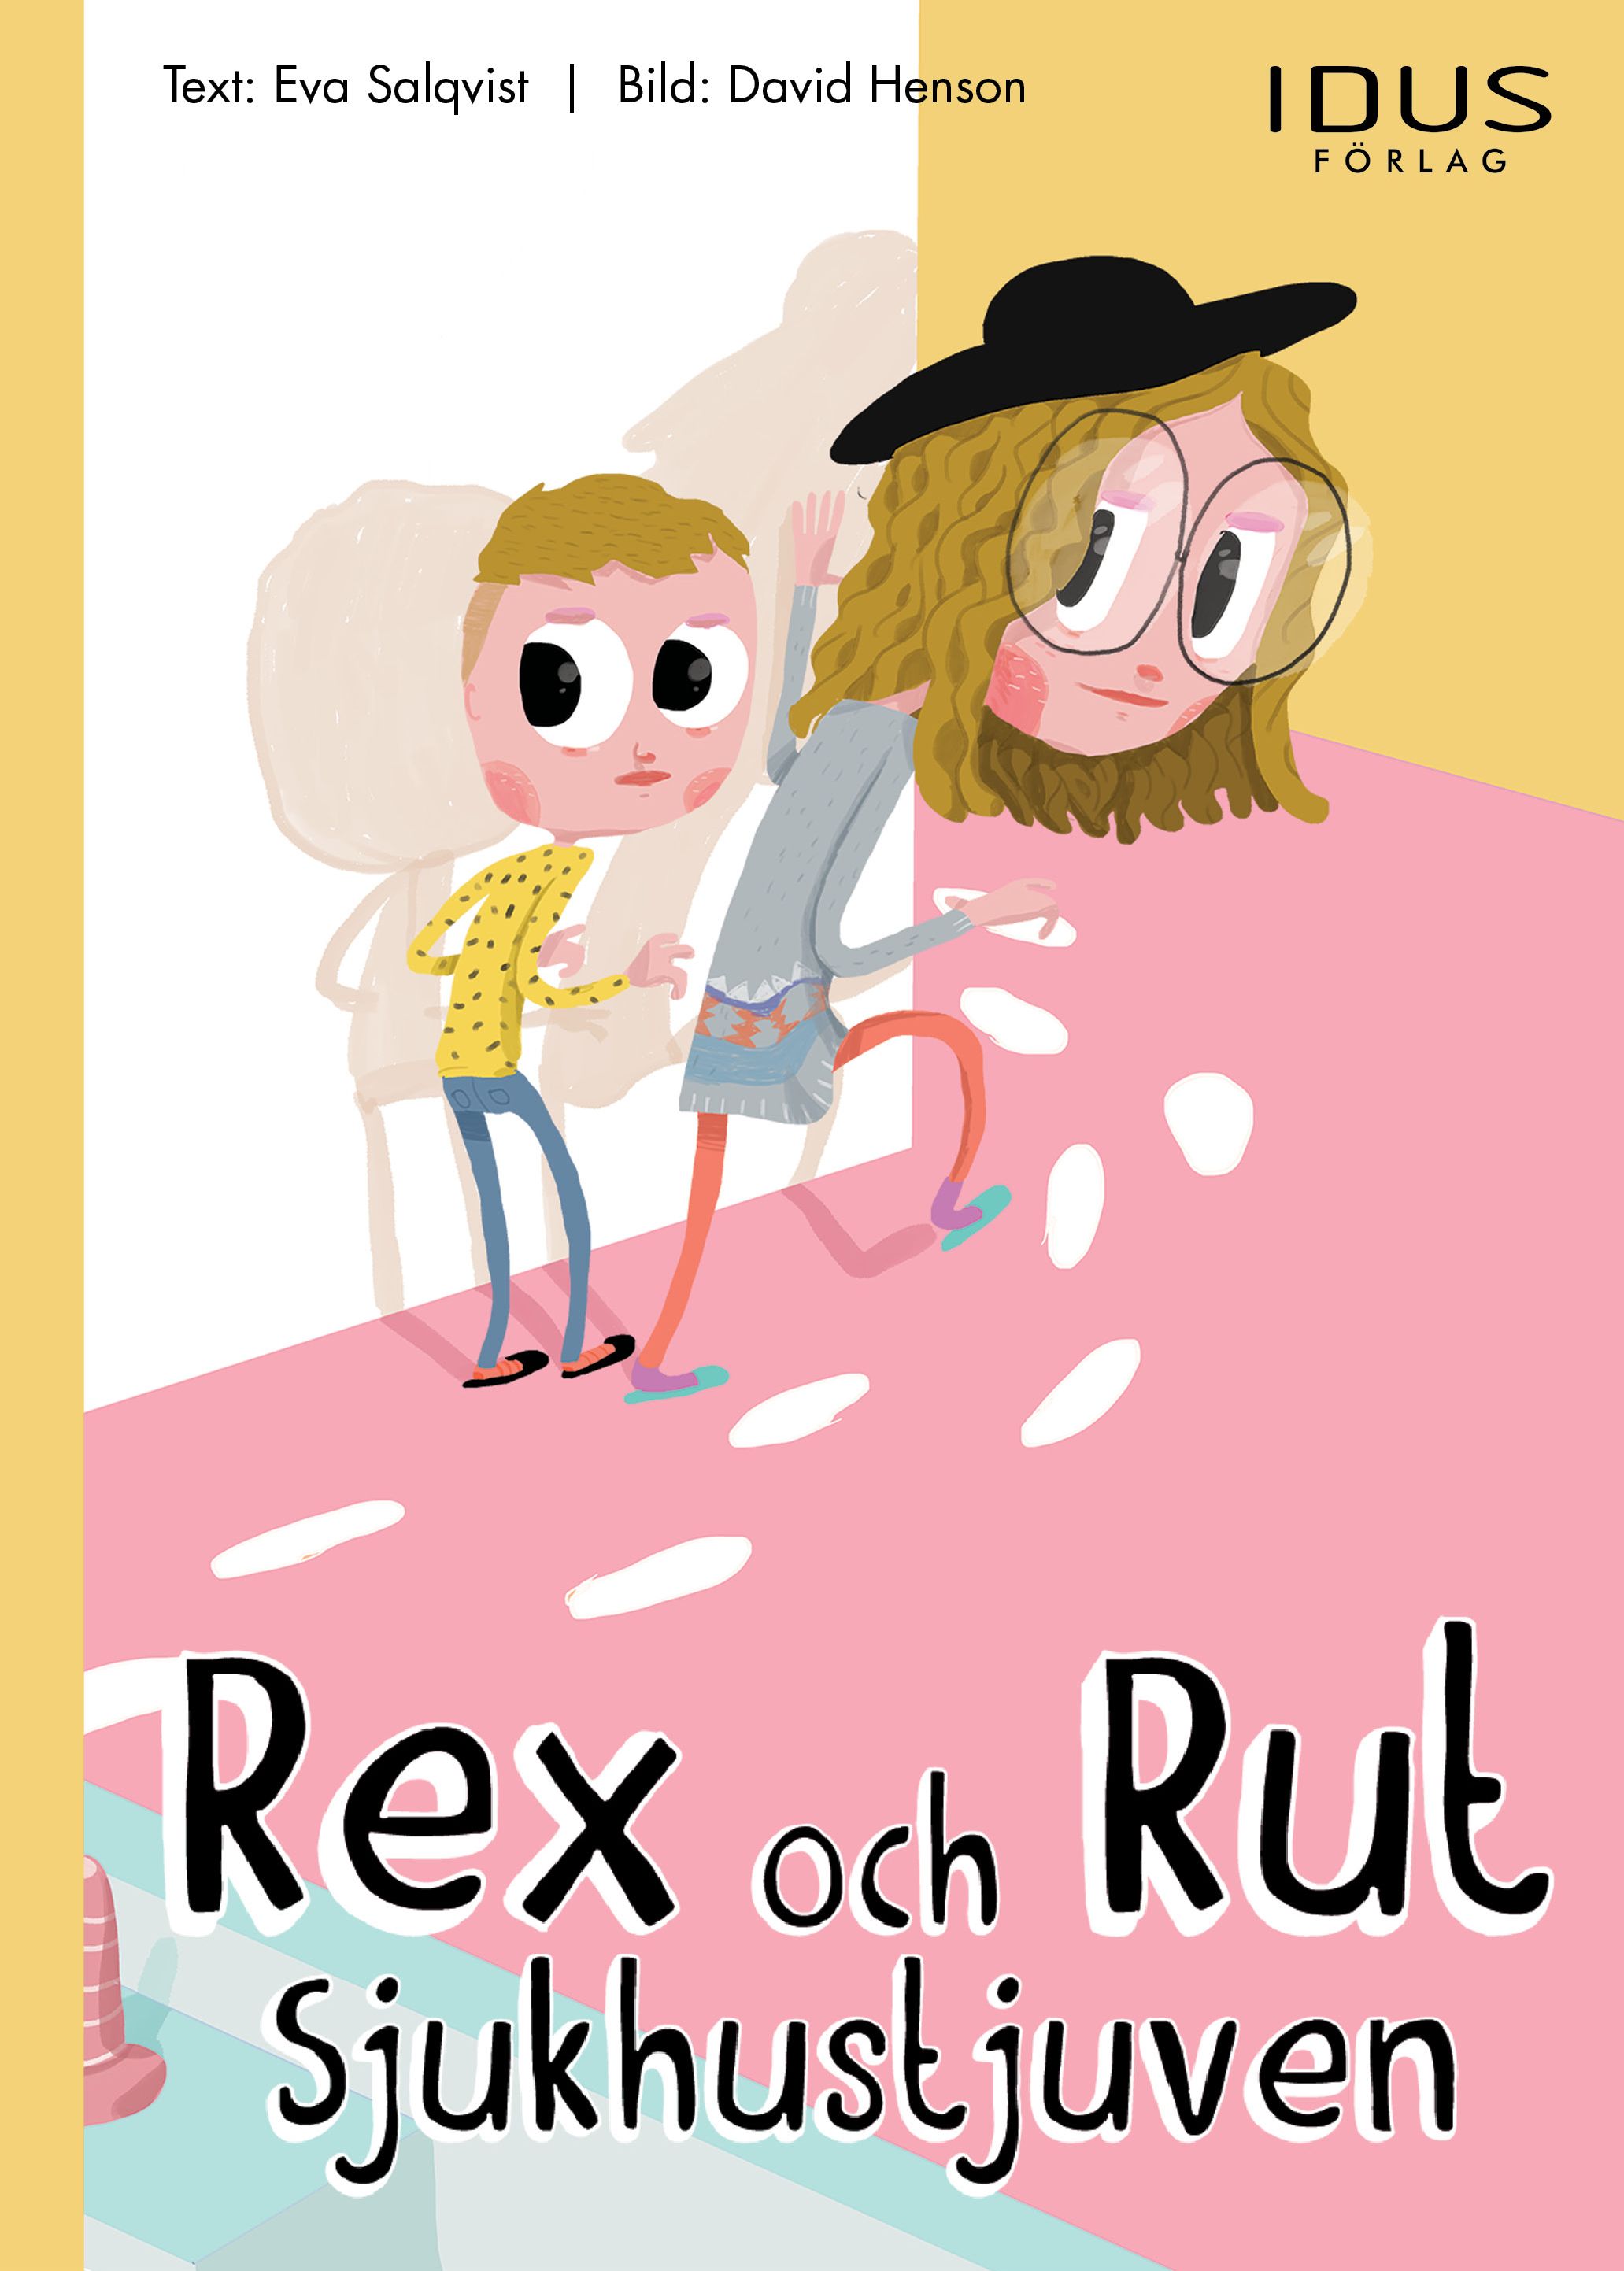 Rex och Rut - Sjukhustjuven, e-bok av Eva Salqvist